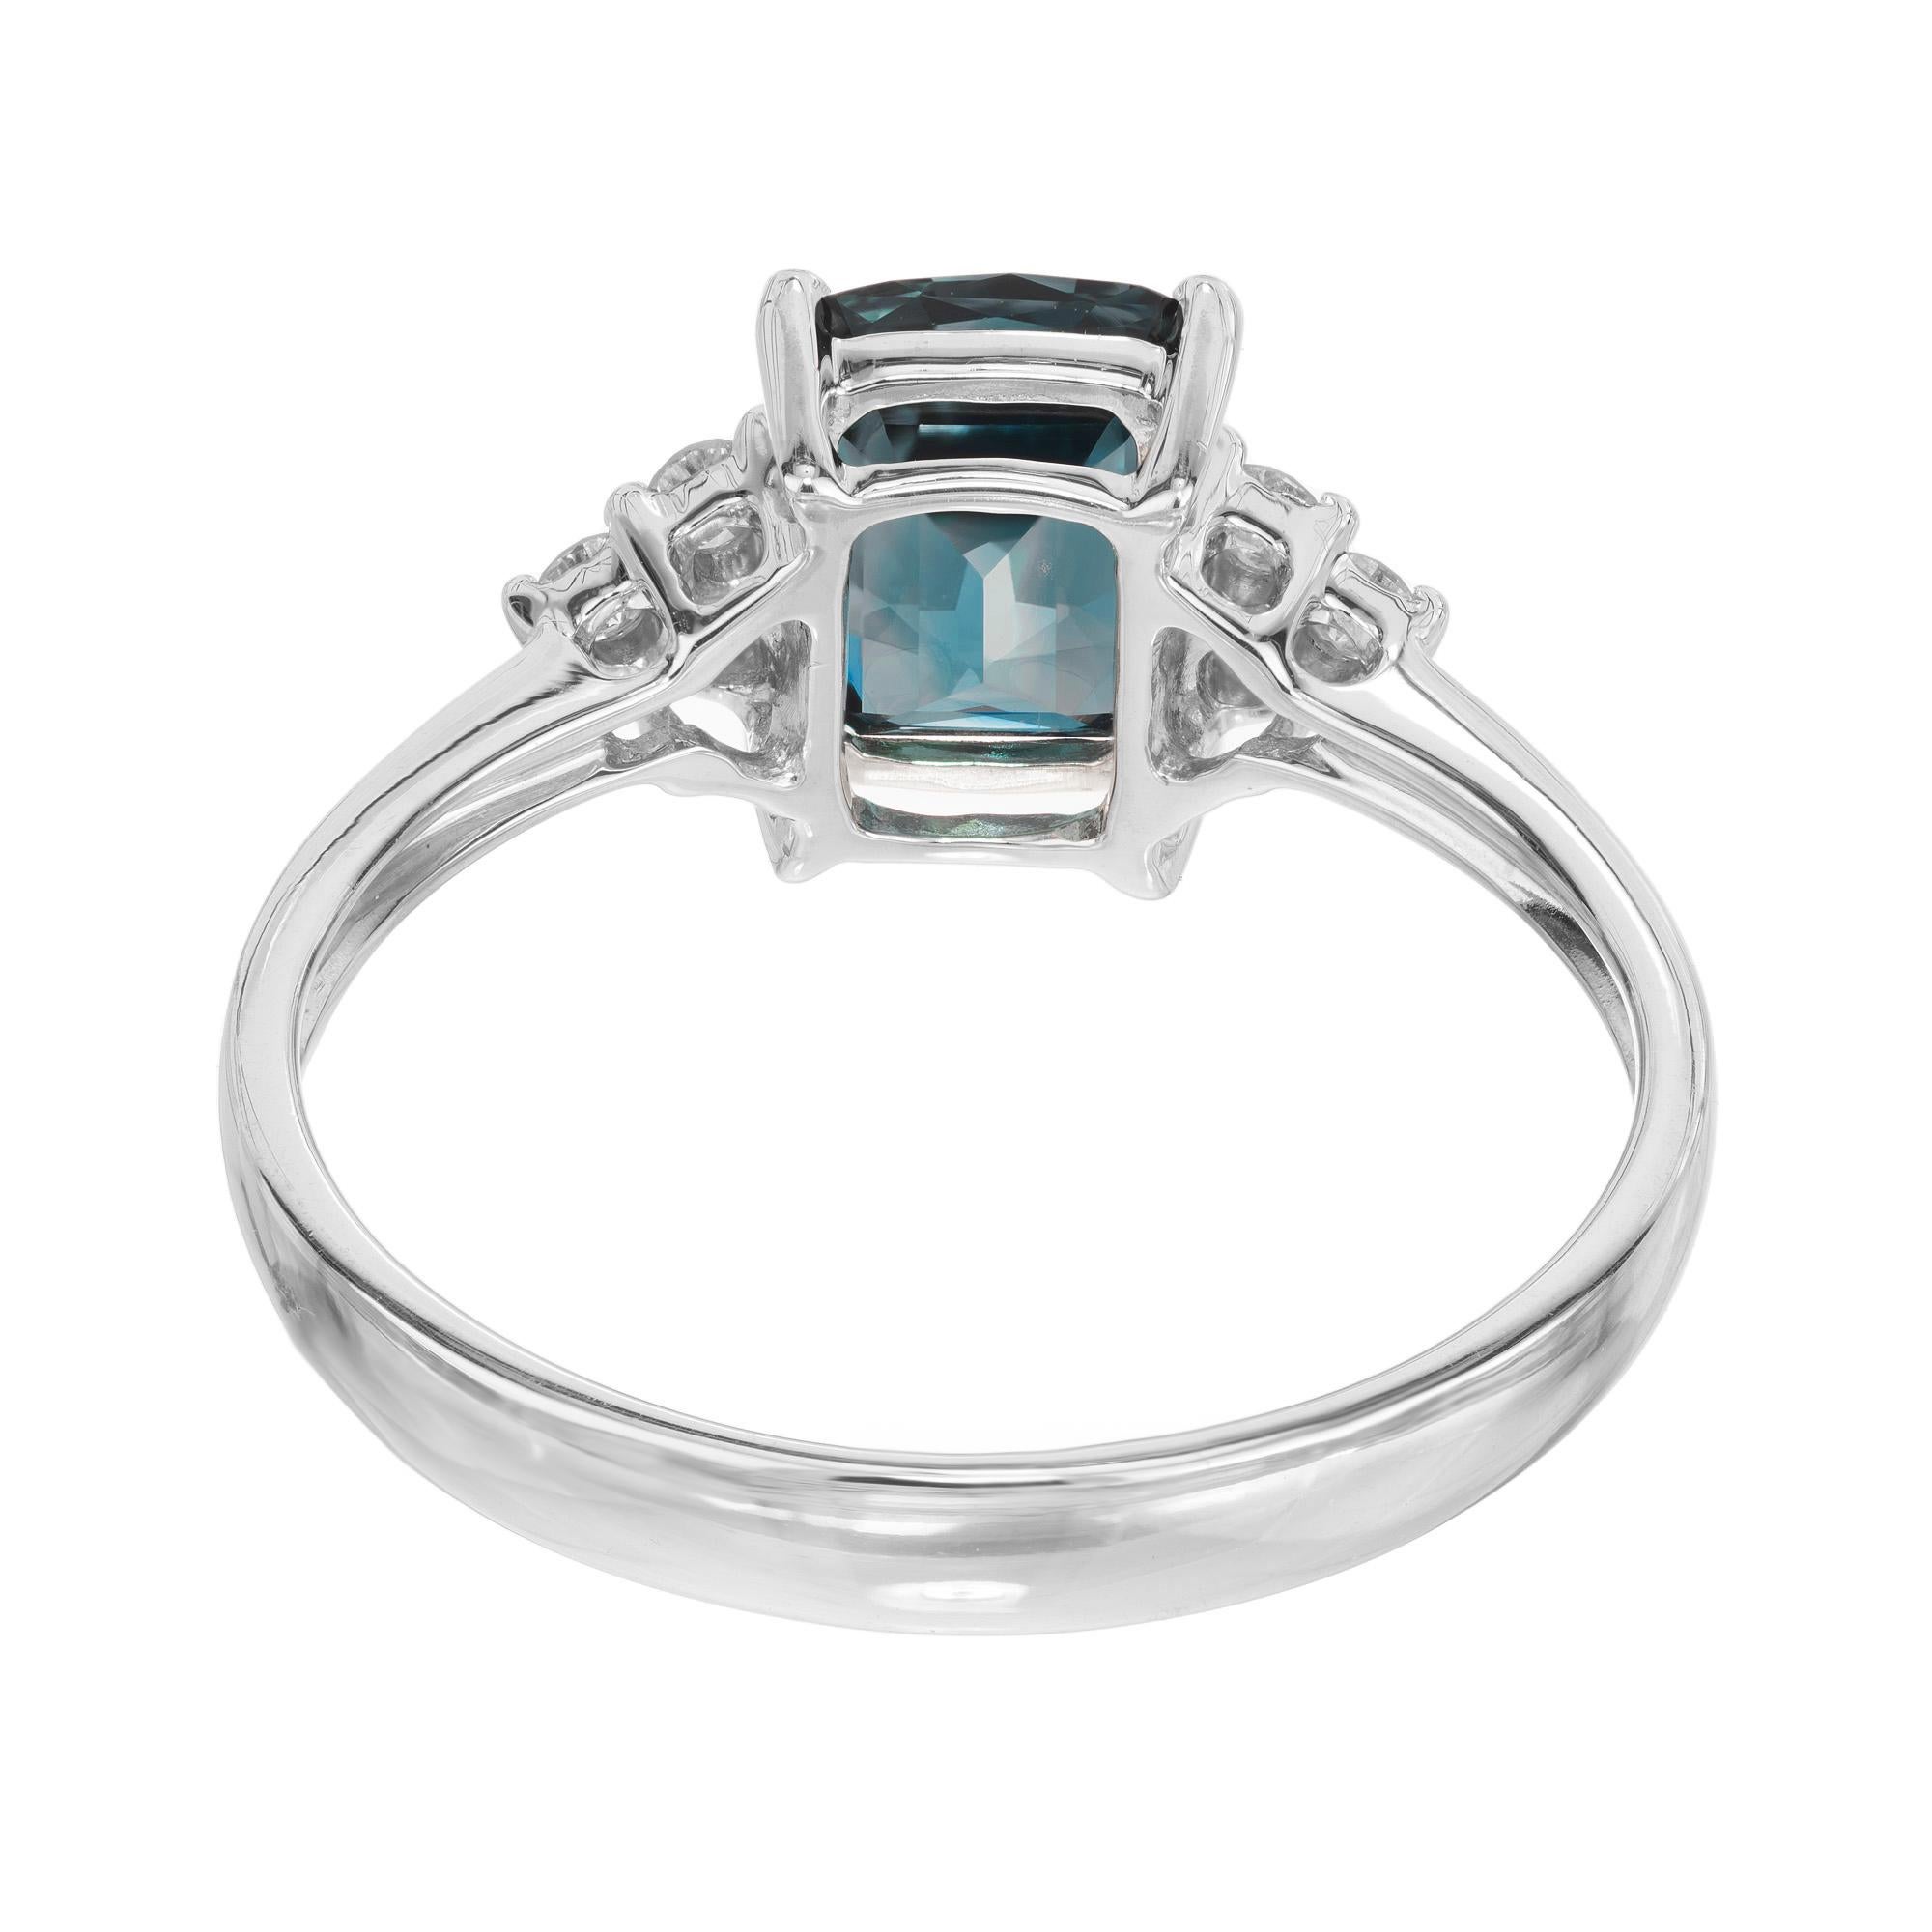 Dieser atemberaubende Ring ist mit einem grünen blauen Saphir im Kissenschliff von 1,30 Karat besetzt, der das Licht mit unvergleichlicher Brillanz einfängt. Um den Saphir herum sind 6 runde Diamanten im Brillantschliff in einer Fassung aus 18 Karat